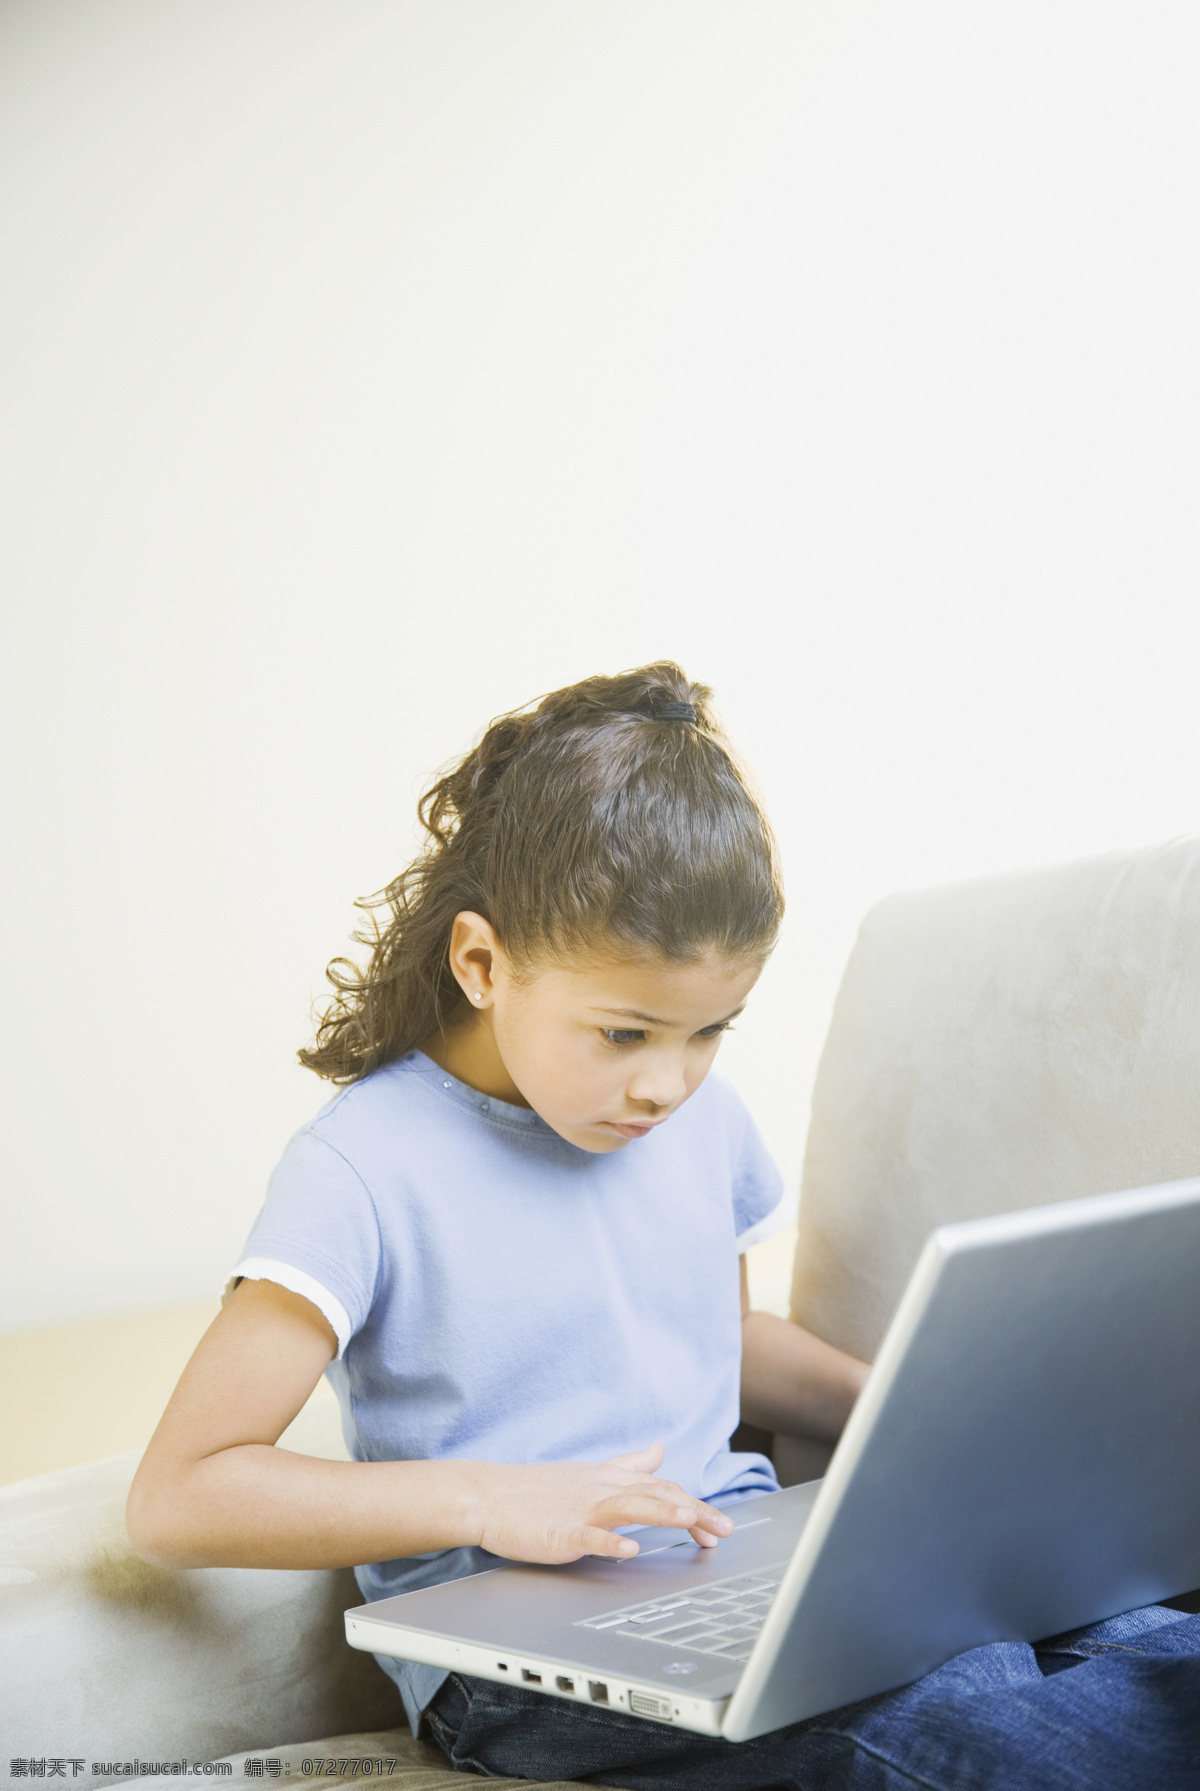 学习 电脑 小女孩 外国儿童 孩子 小学生 儿童教育 上网 儿童图片 人物图片